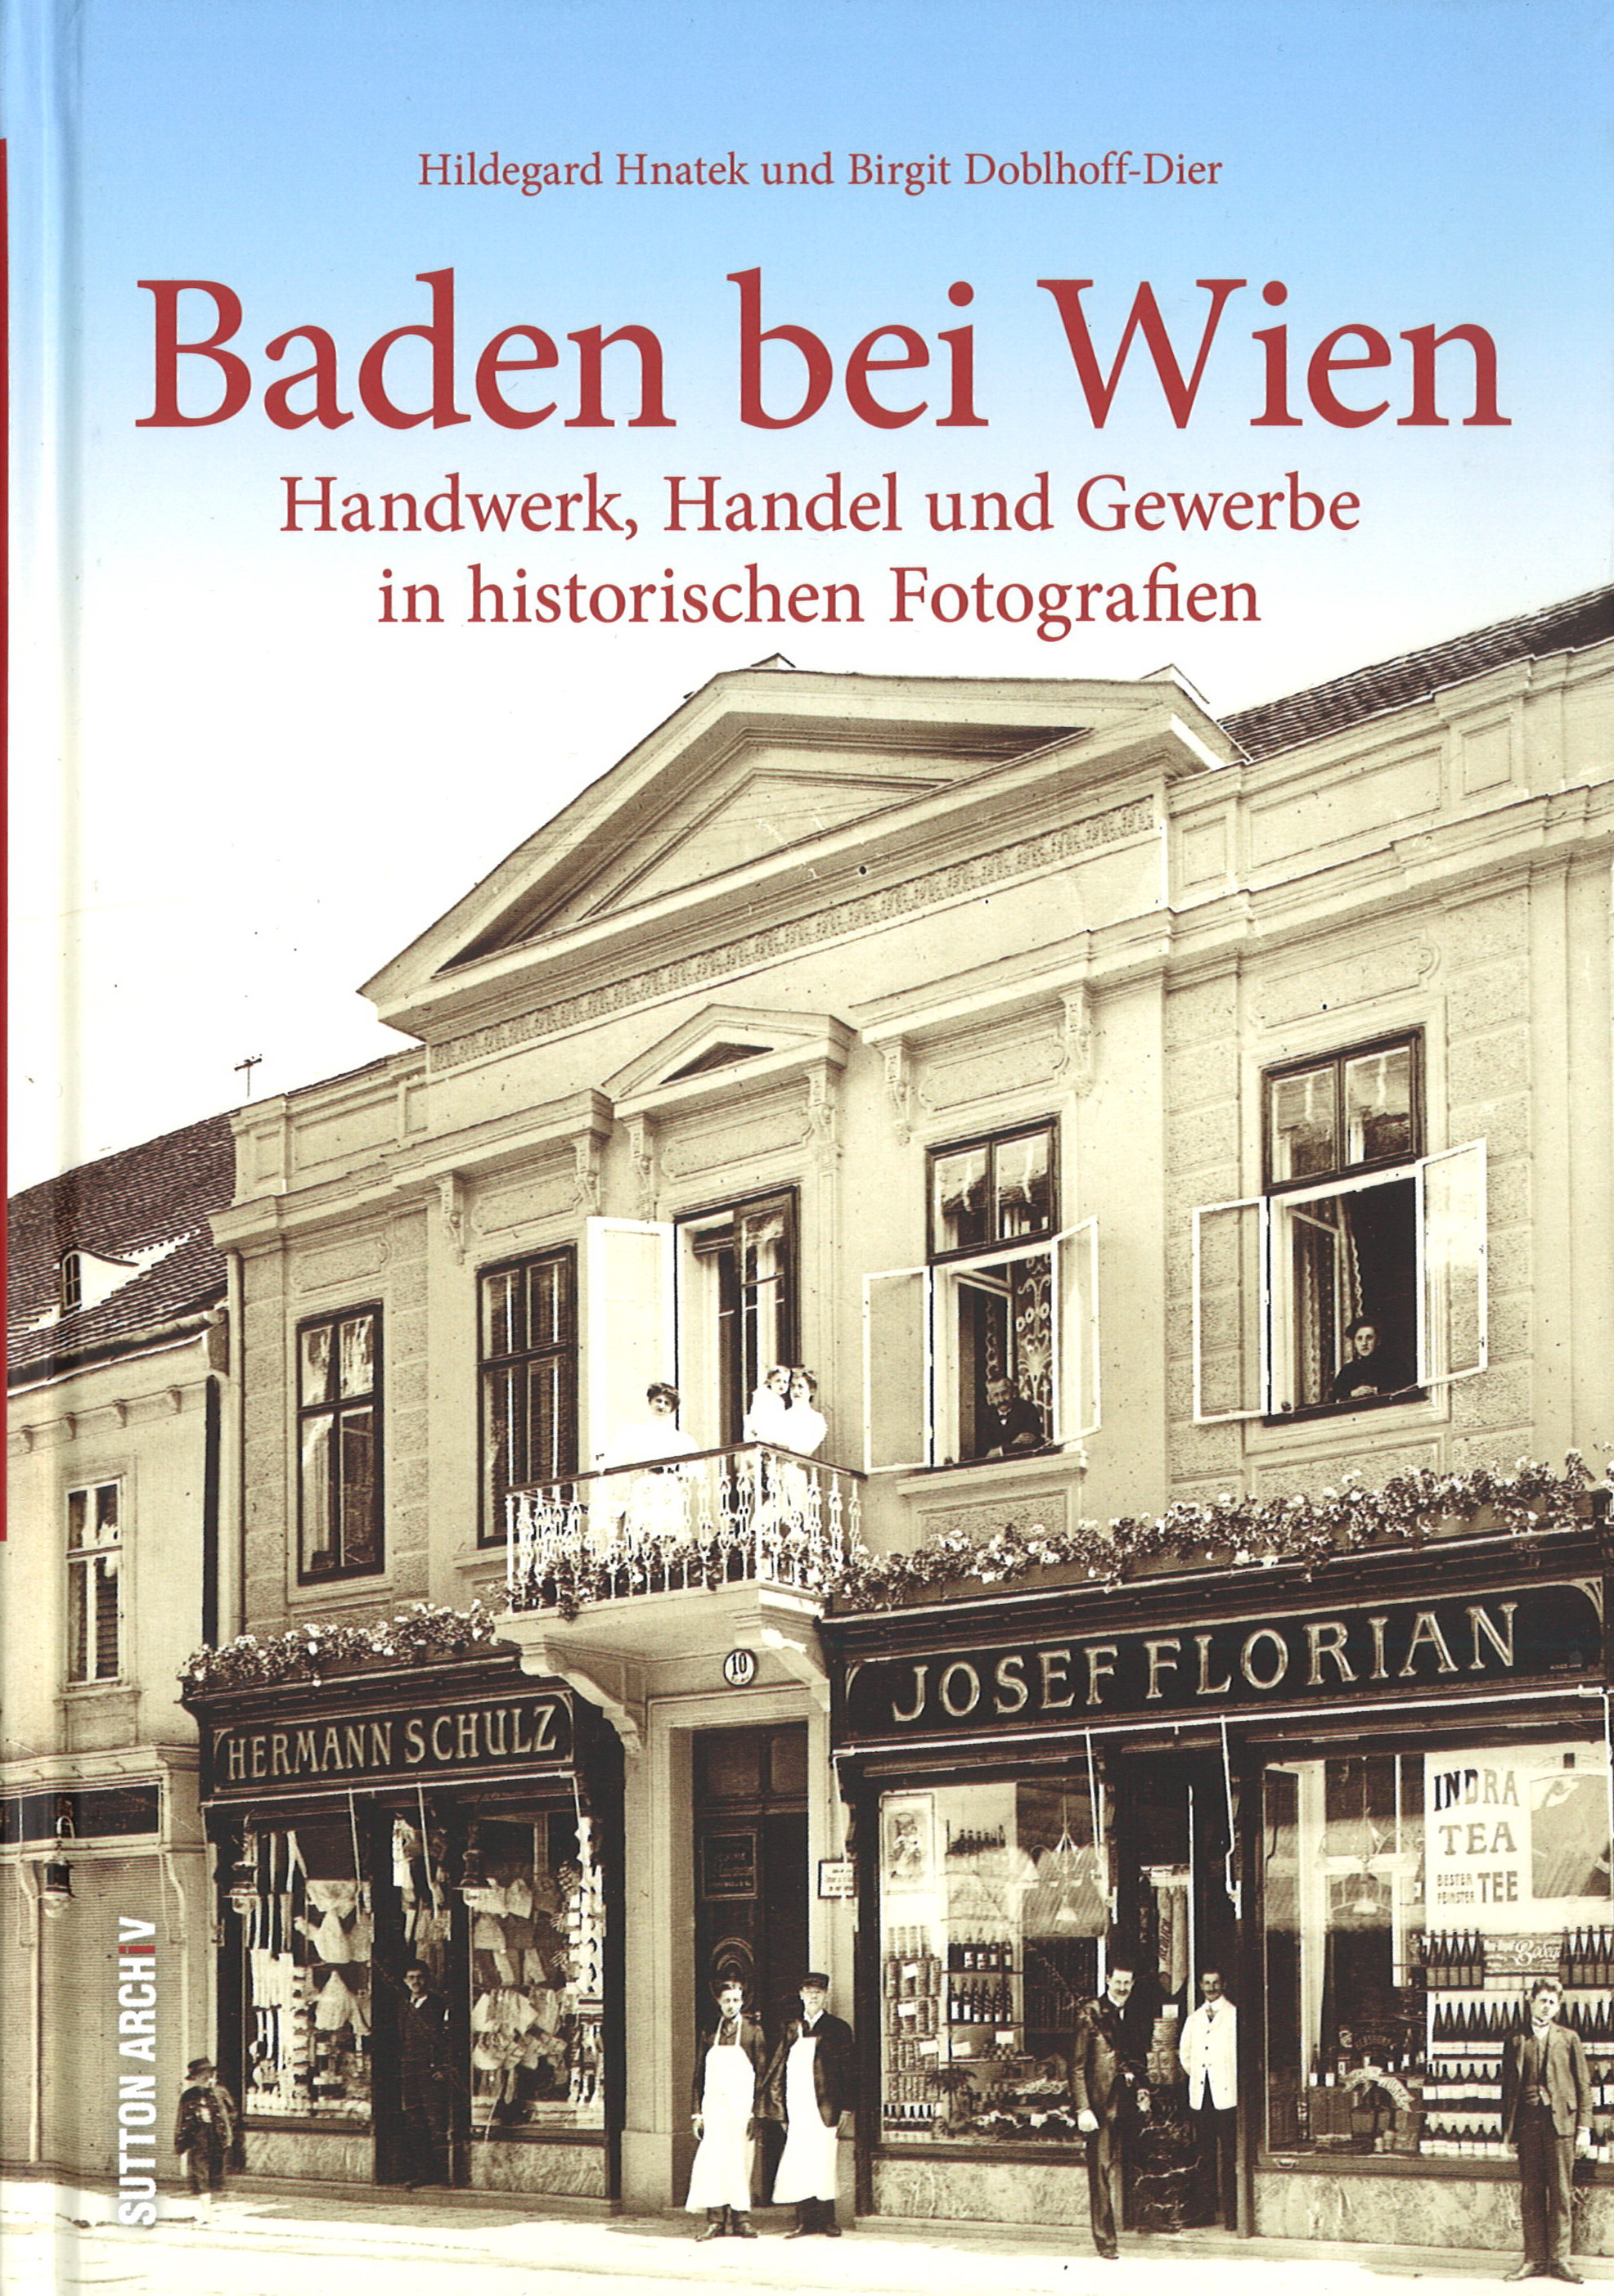 Baden bei Wien – Handwerk, Handel und Gewerbe in historischen Fotografien 120 Seiten, Hildegard Hnatek und Birgit Doblhoff-Dier € 19,90